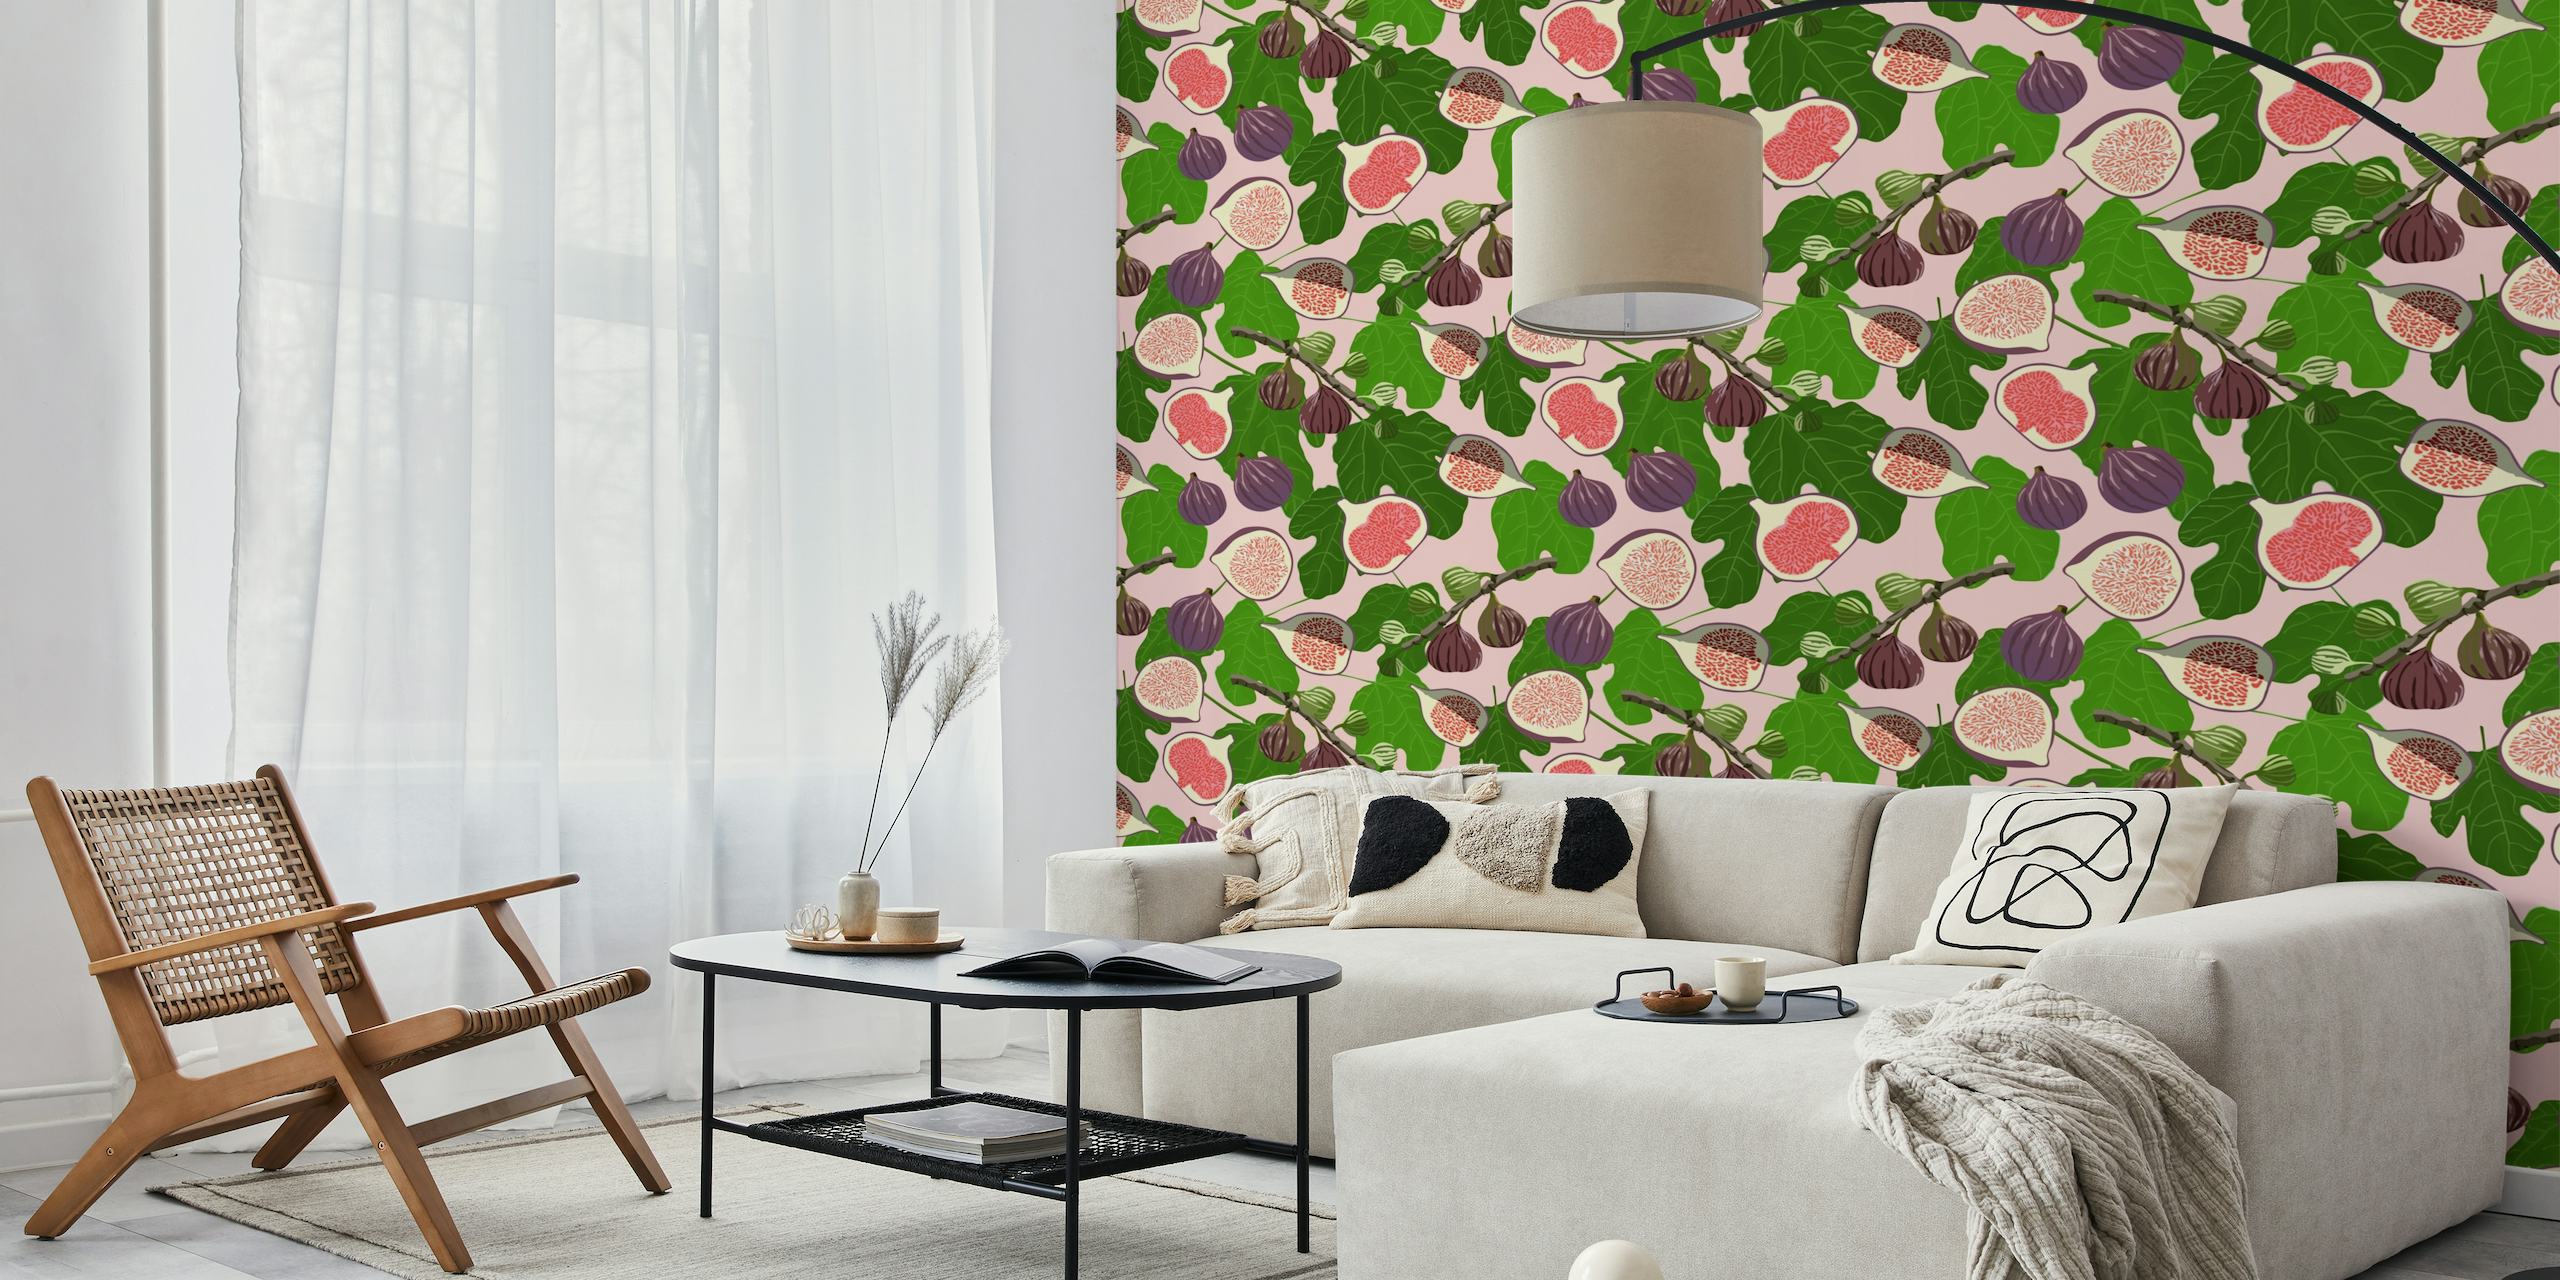 Svijetla i primamljiva zidna slika "Smokve i lišće" s ružičastim i ljubičastim smokvama usred uzorka zelenog lišća